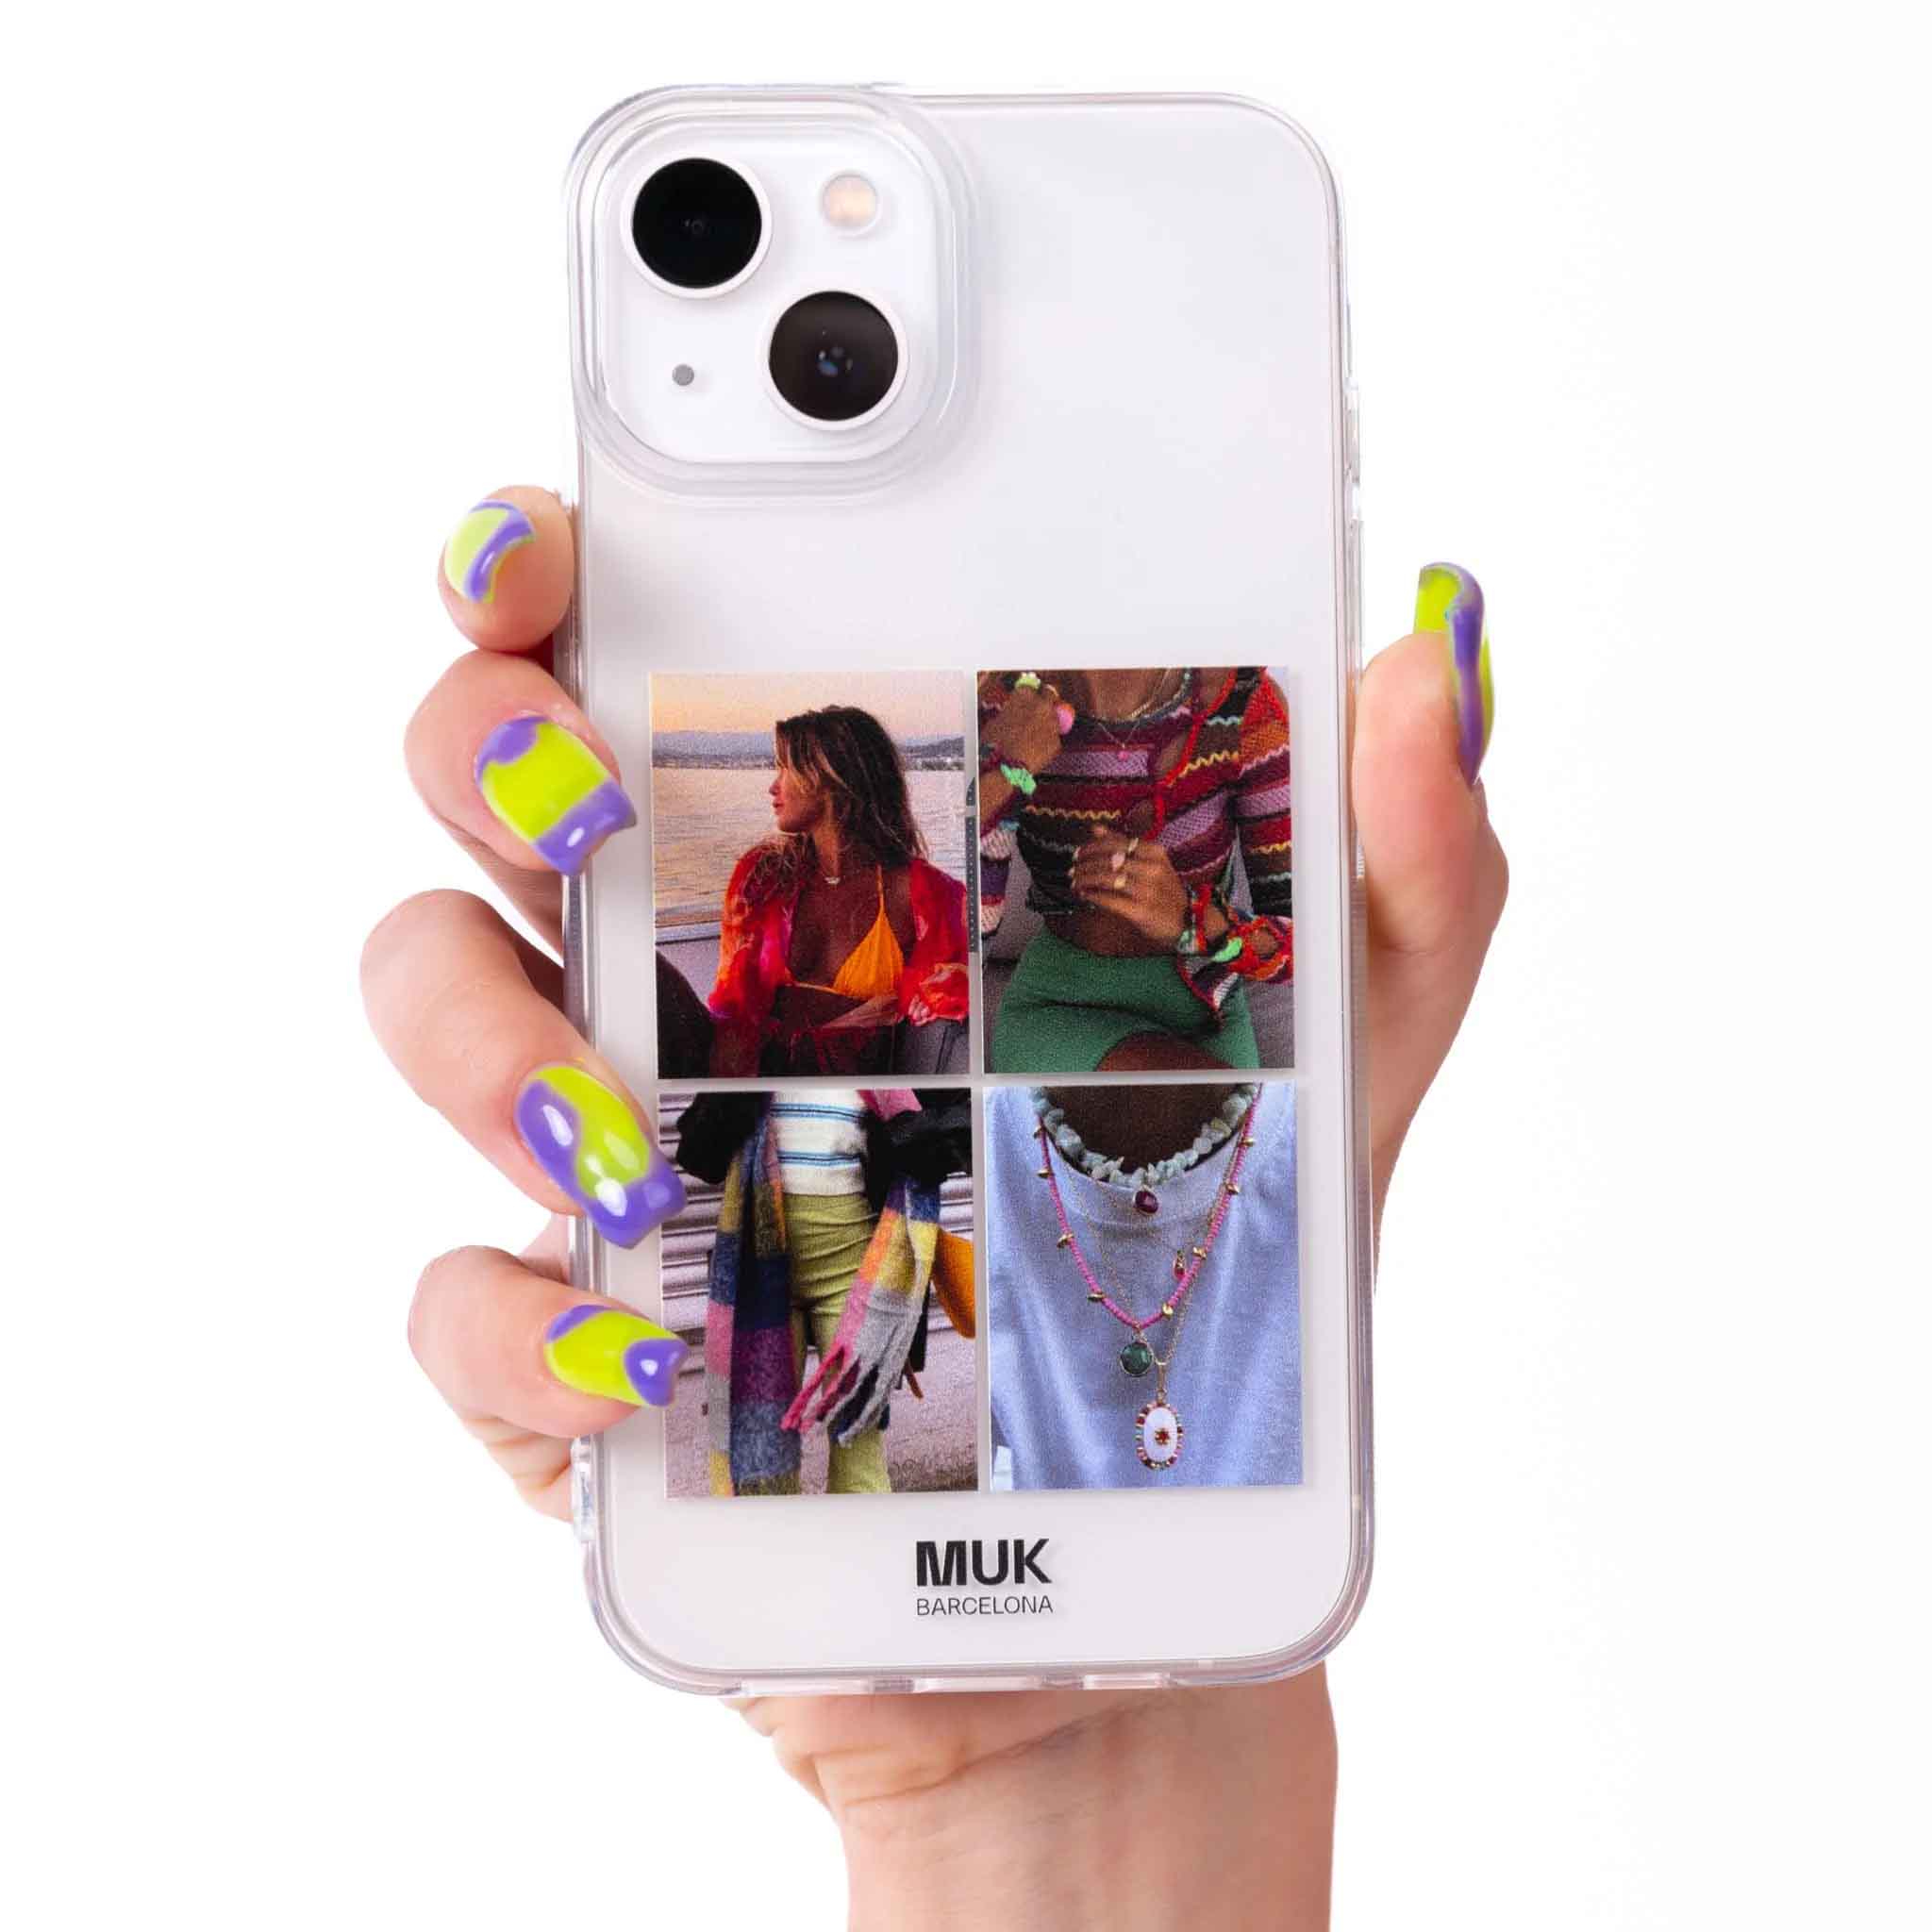 Funda móvil transparente personalizada Collage 4 fotos. Combina las fotos mas especiales de tu galería.
